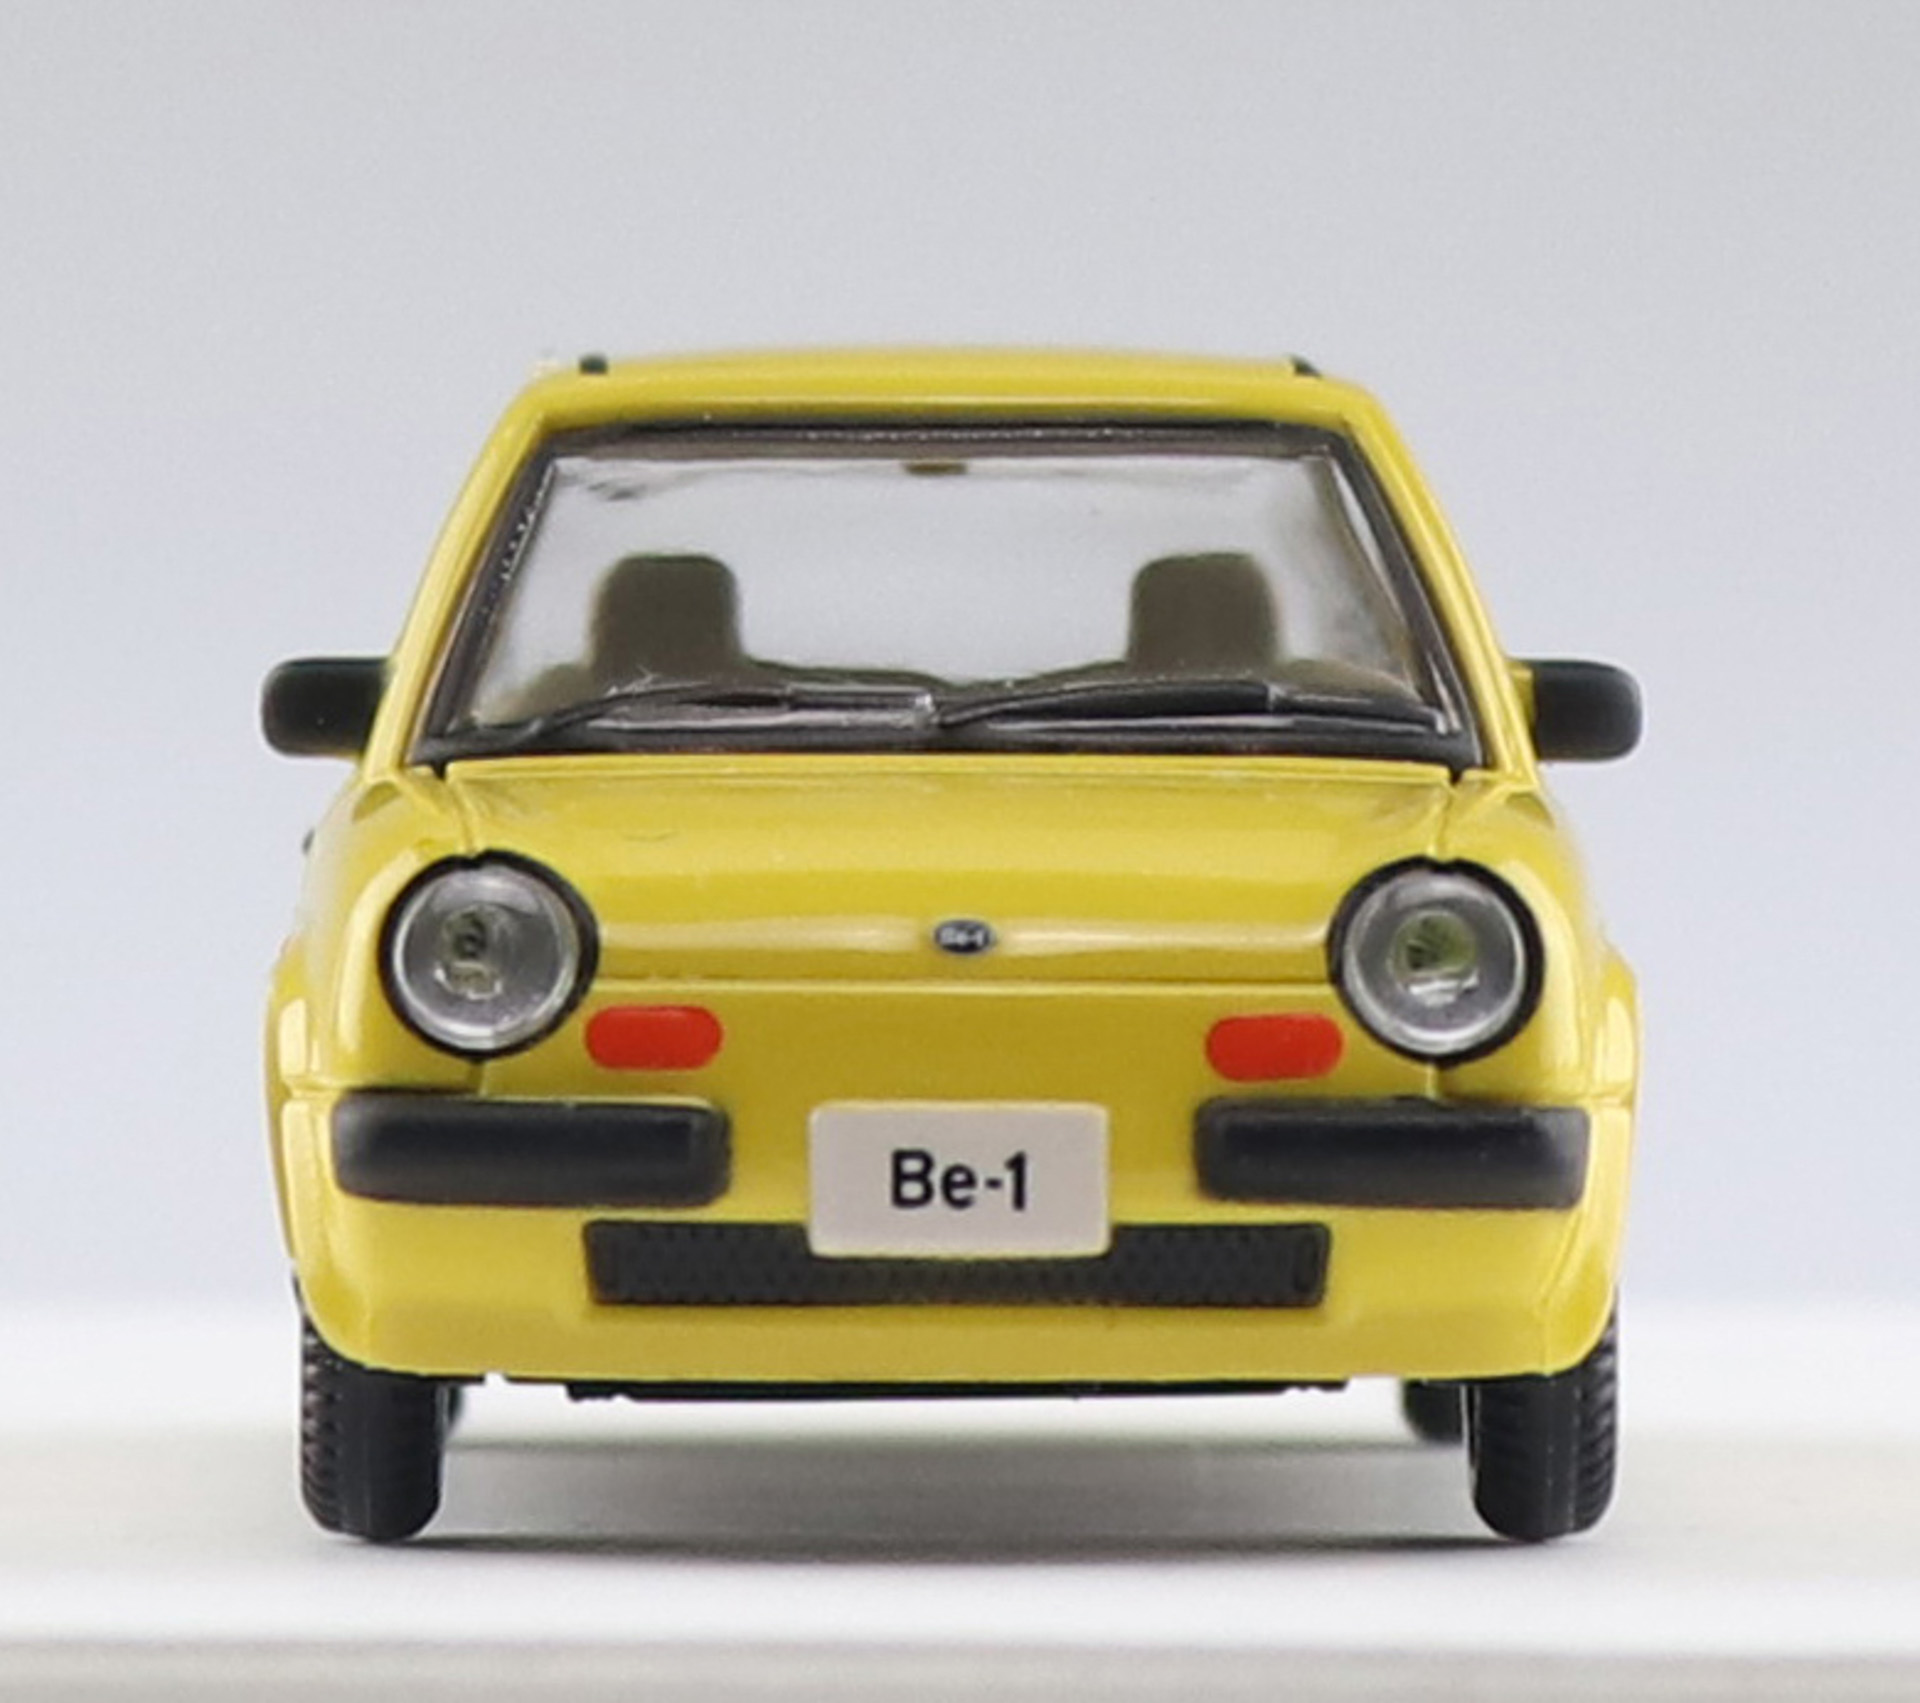 日産「Be-1」を1/64スケールで再現 アオシマ「1/64 Nissan Be-1 コレクション」 - Car Watch